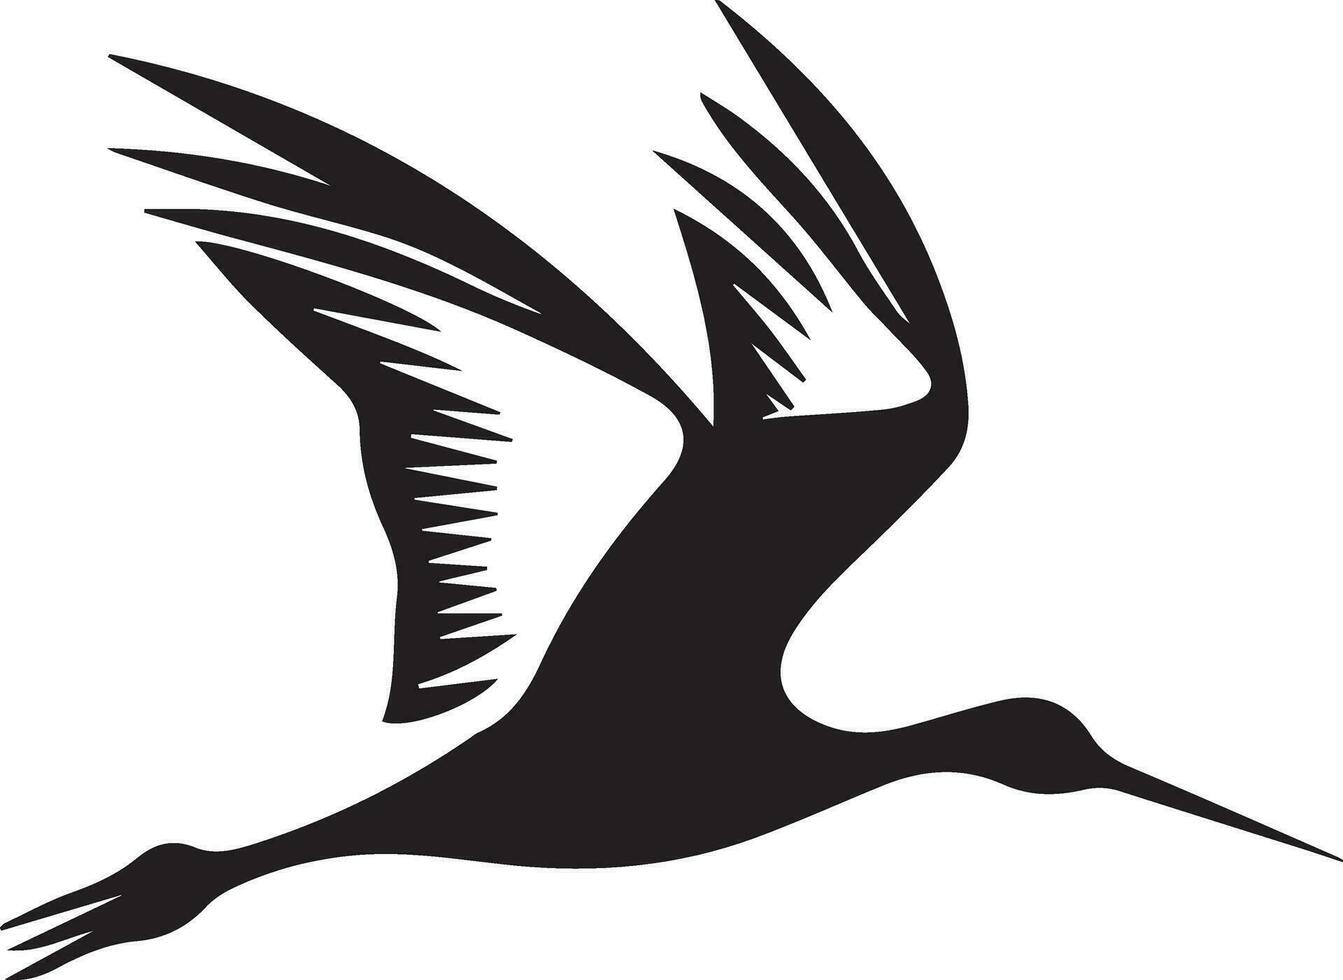 Avocet Vogel Vektor Silhouette Illustration schwarz Farbe